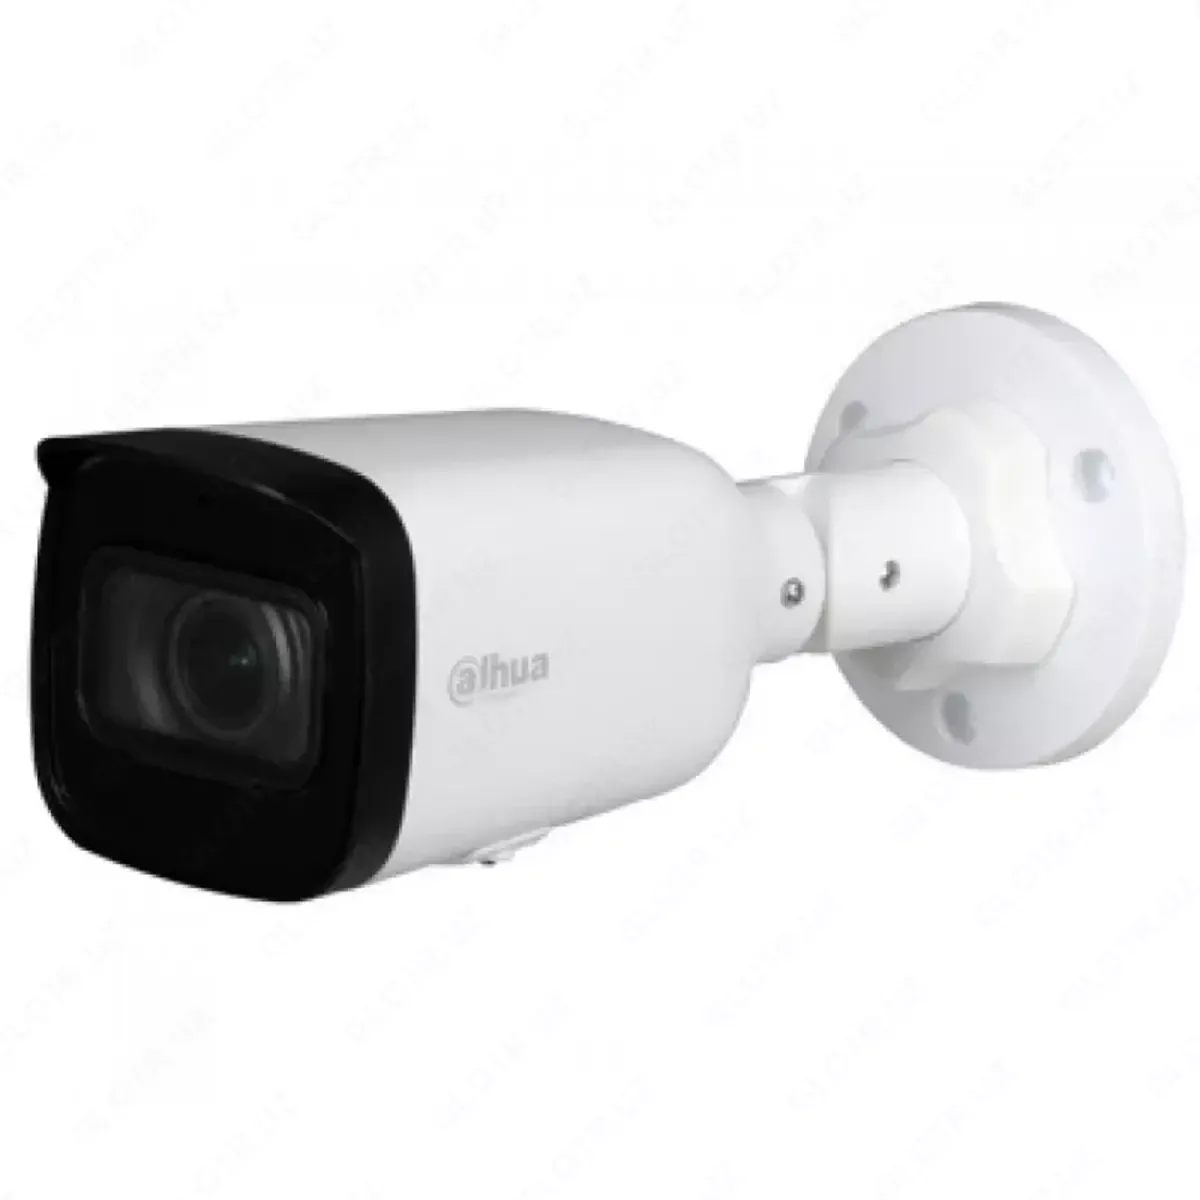 IP video kamera Dahua DH-IPC-HFW1230T1P-ZS-2812-S4#1